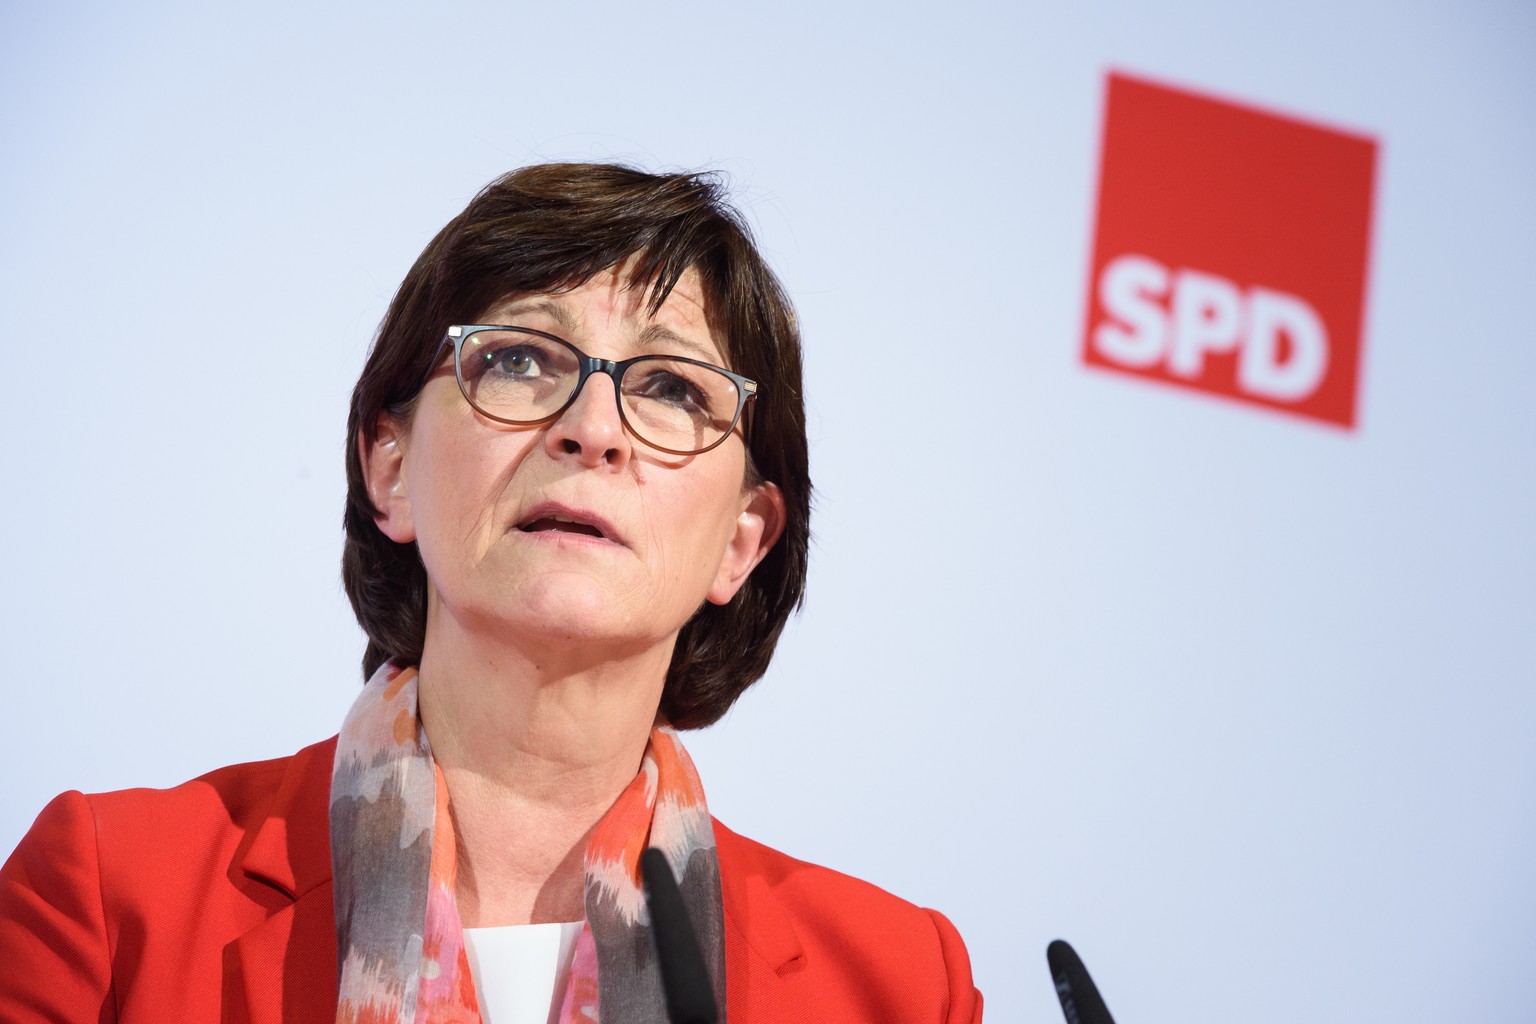 Saskia Esken wird von der CDU scharf kritisiert.  